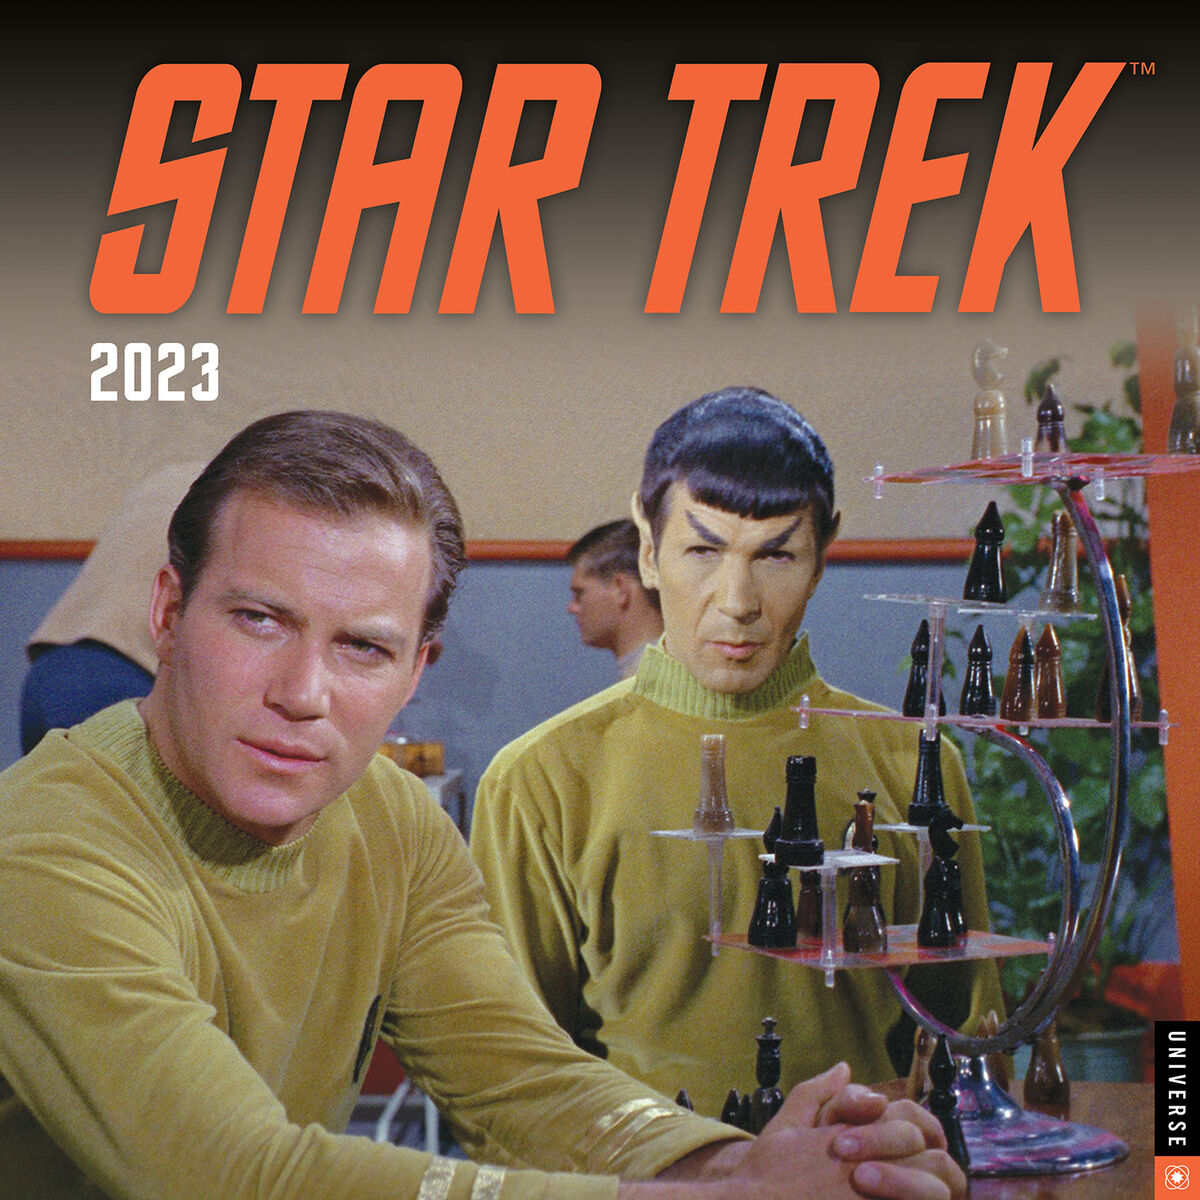 Star Trek 2023 Wall Calendar Calendars & Planners Hallmark